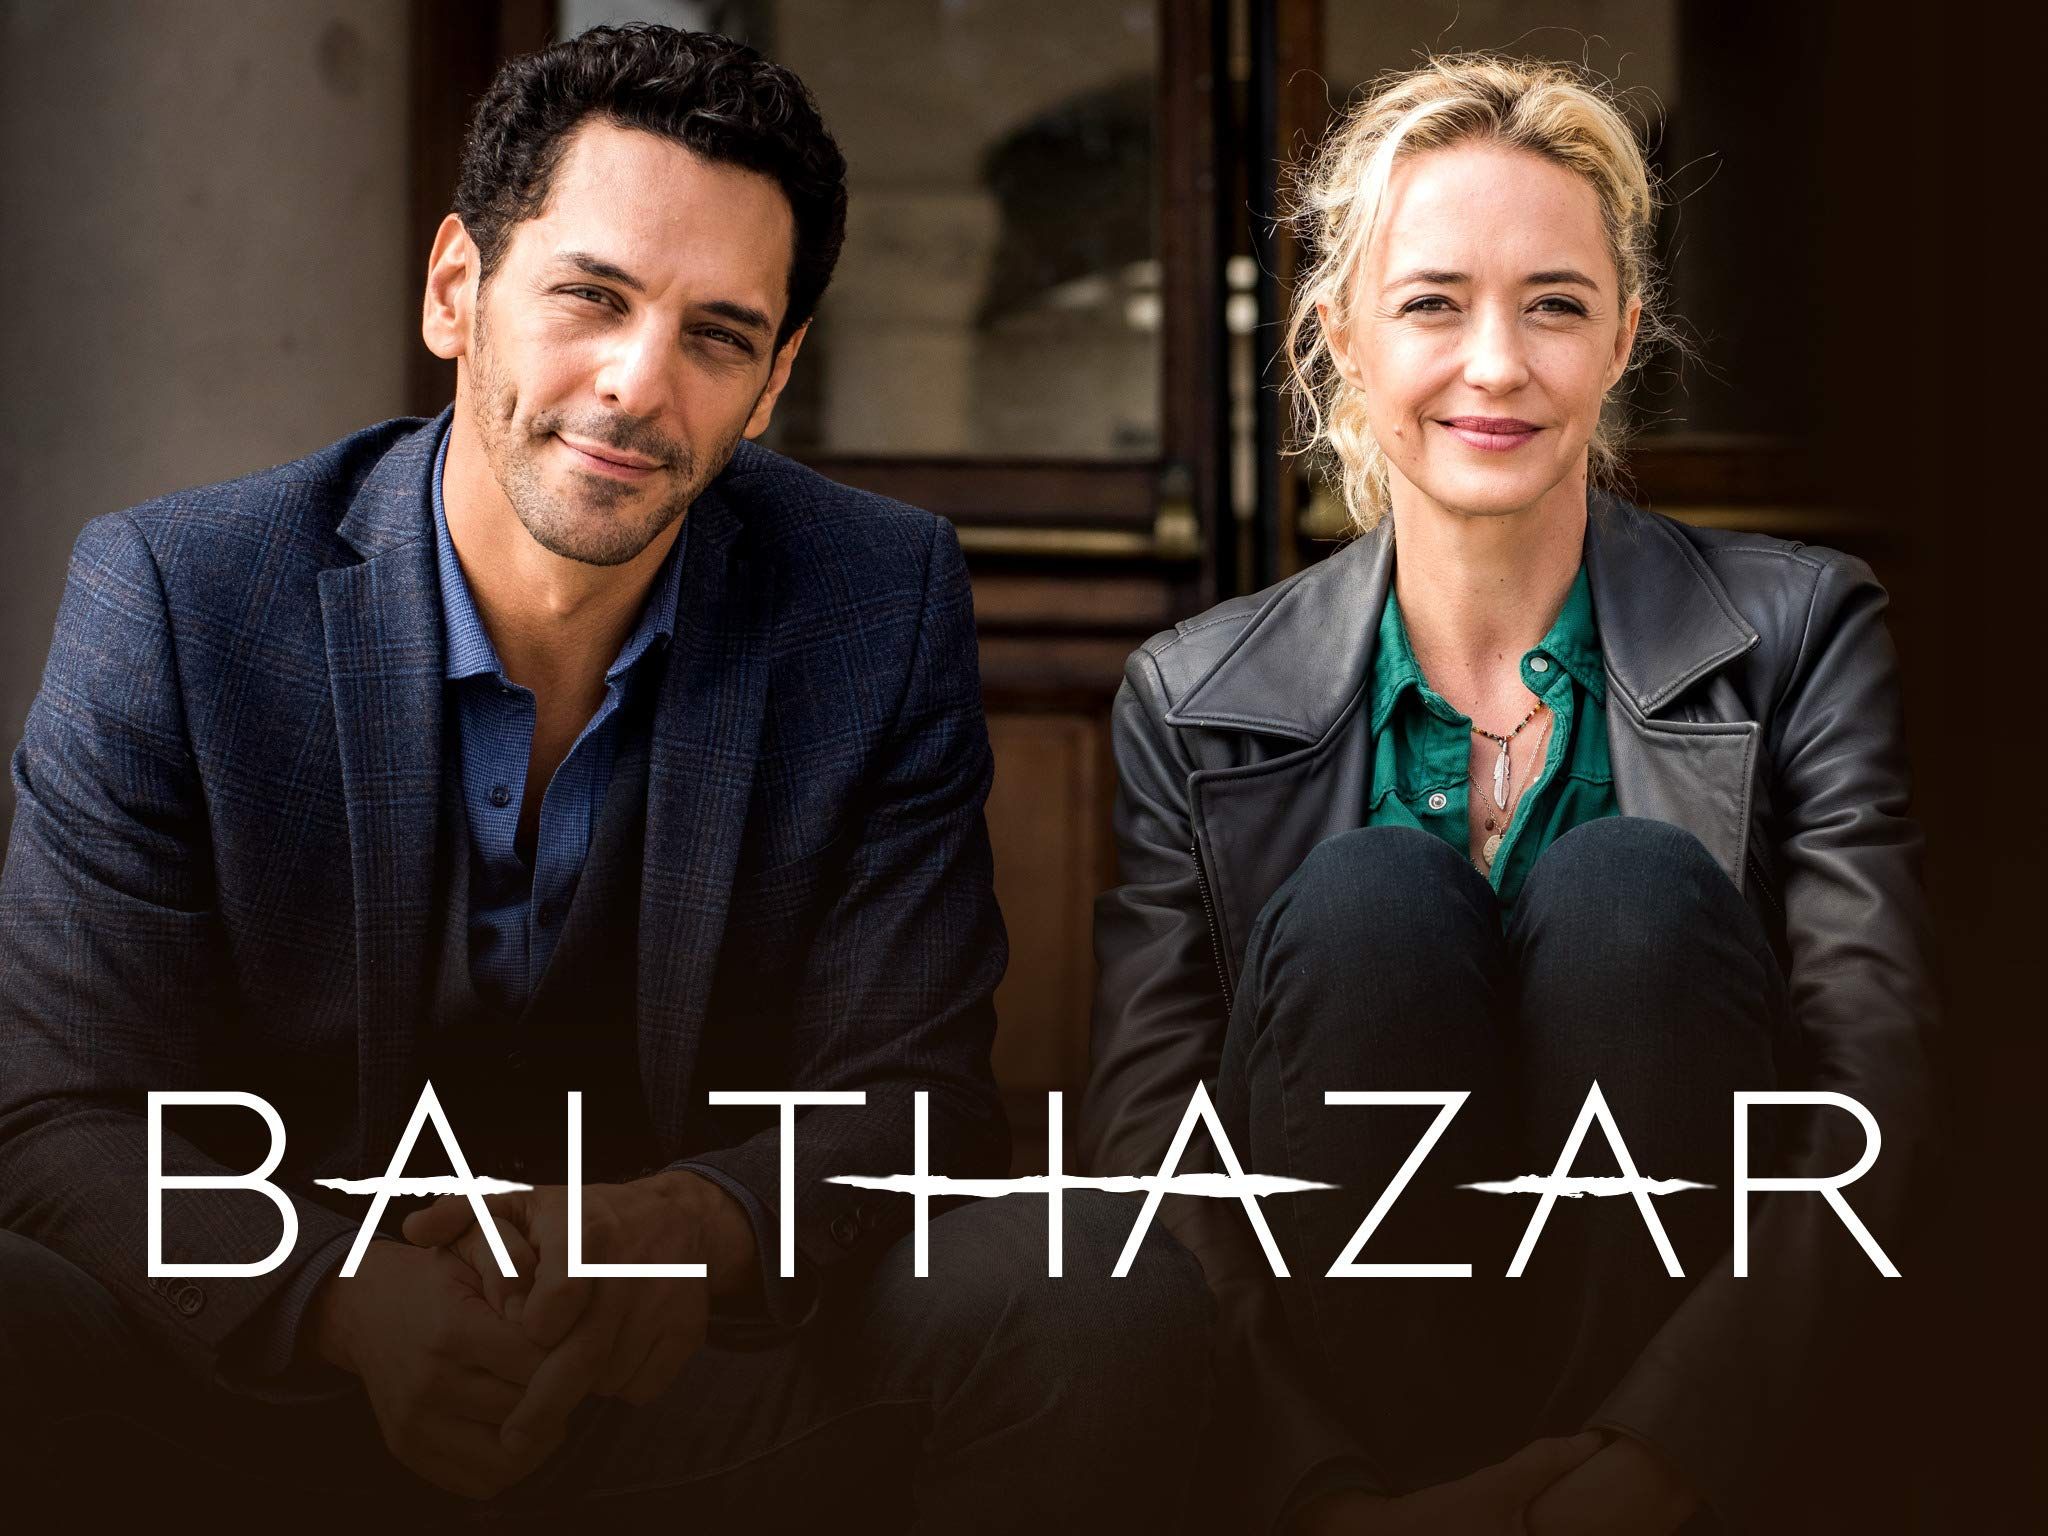 Les fans de Bathazar n'aime pas ce nouveau duo, 2 millions de téléspectateurs en moins par rapport au 2 premiers épisodes.